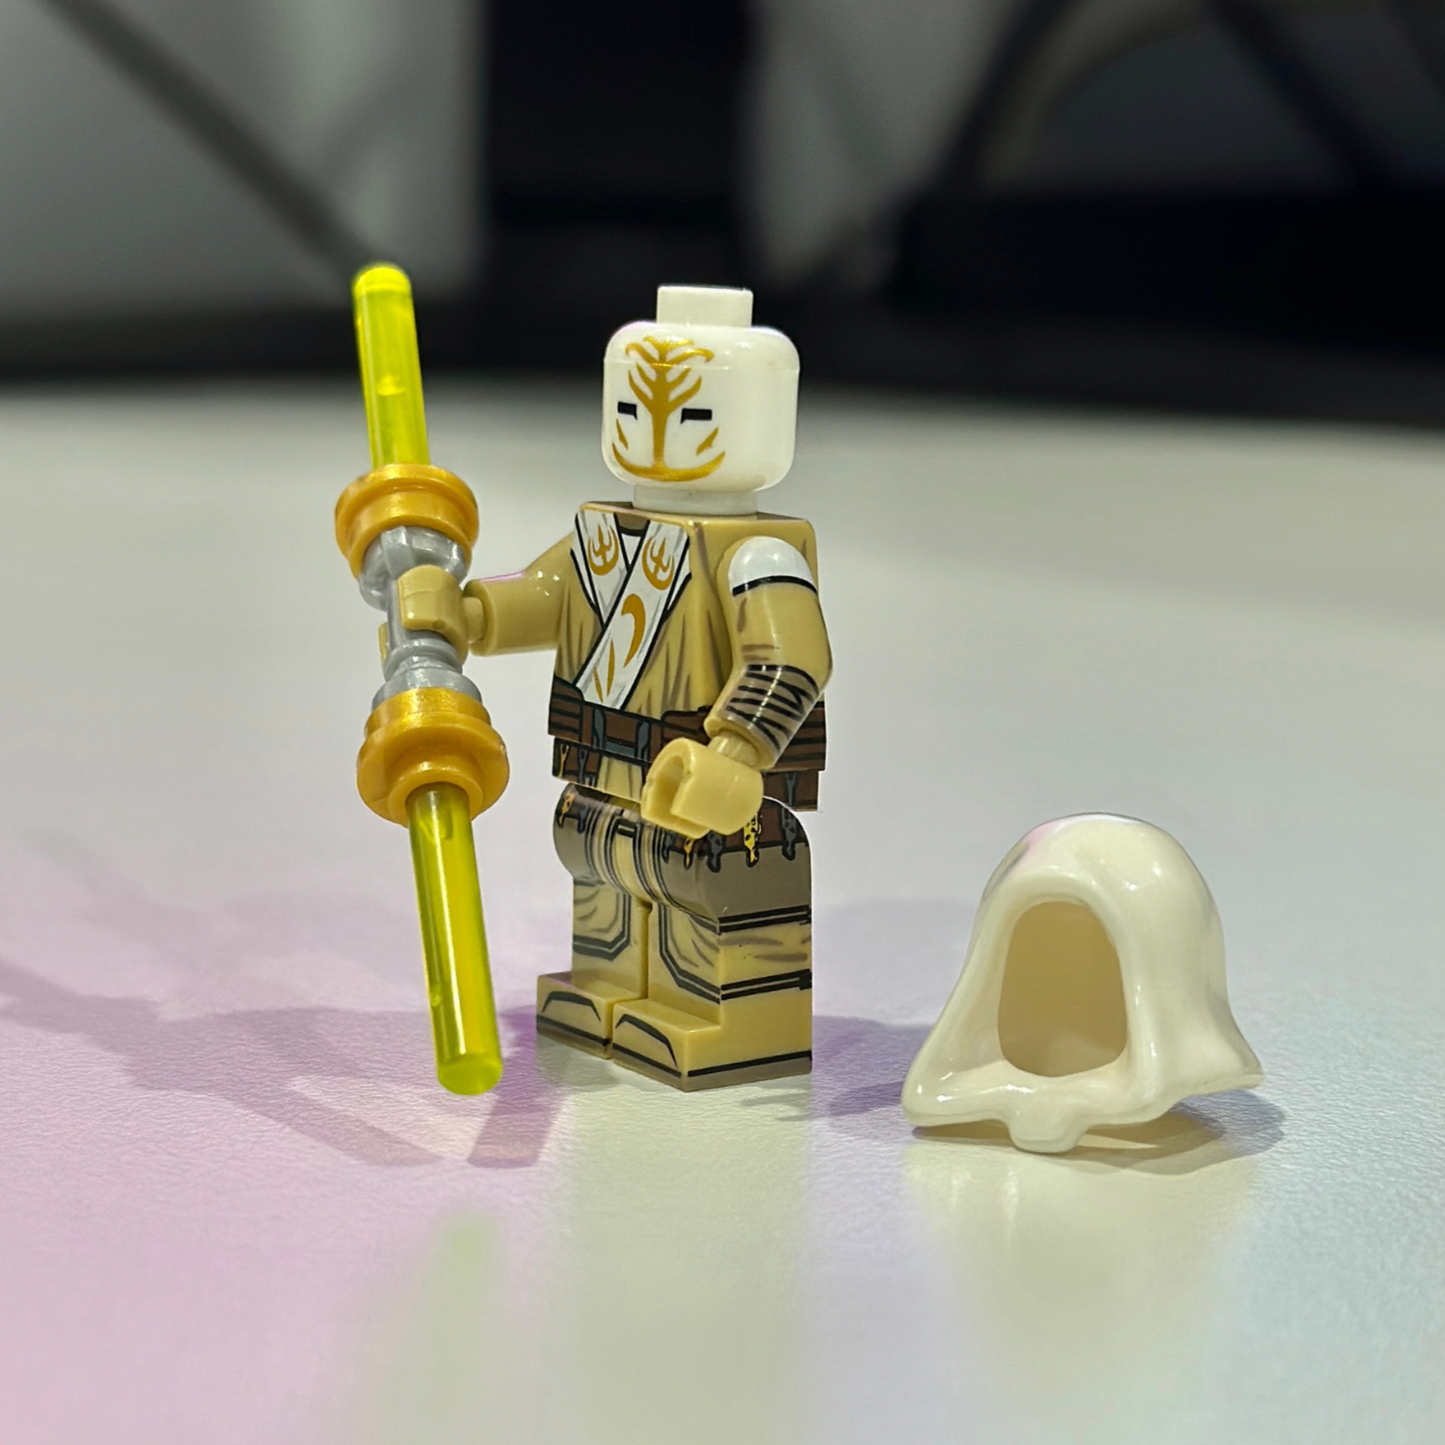 Star Wars Jedi Temple Guard Minifigure